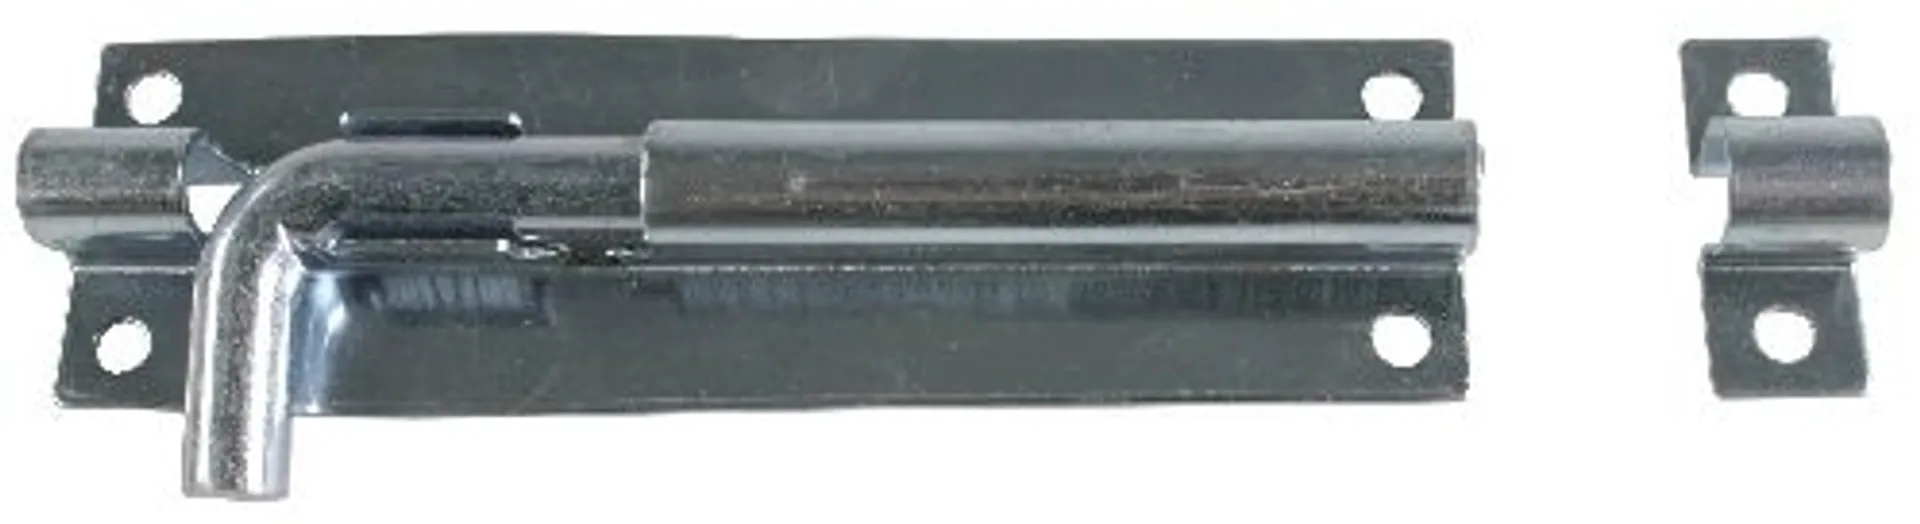 Työntösalpa 7123-300mm sinkitty - 1